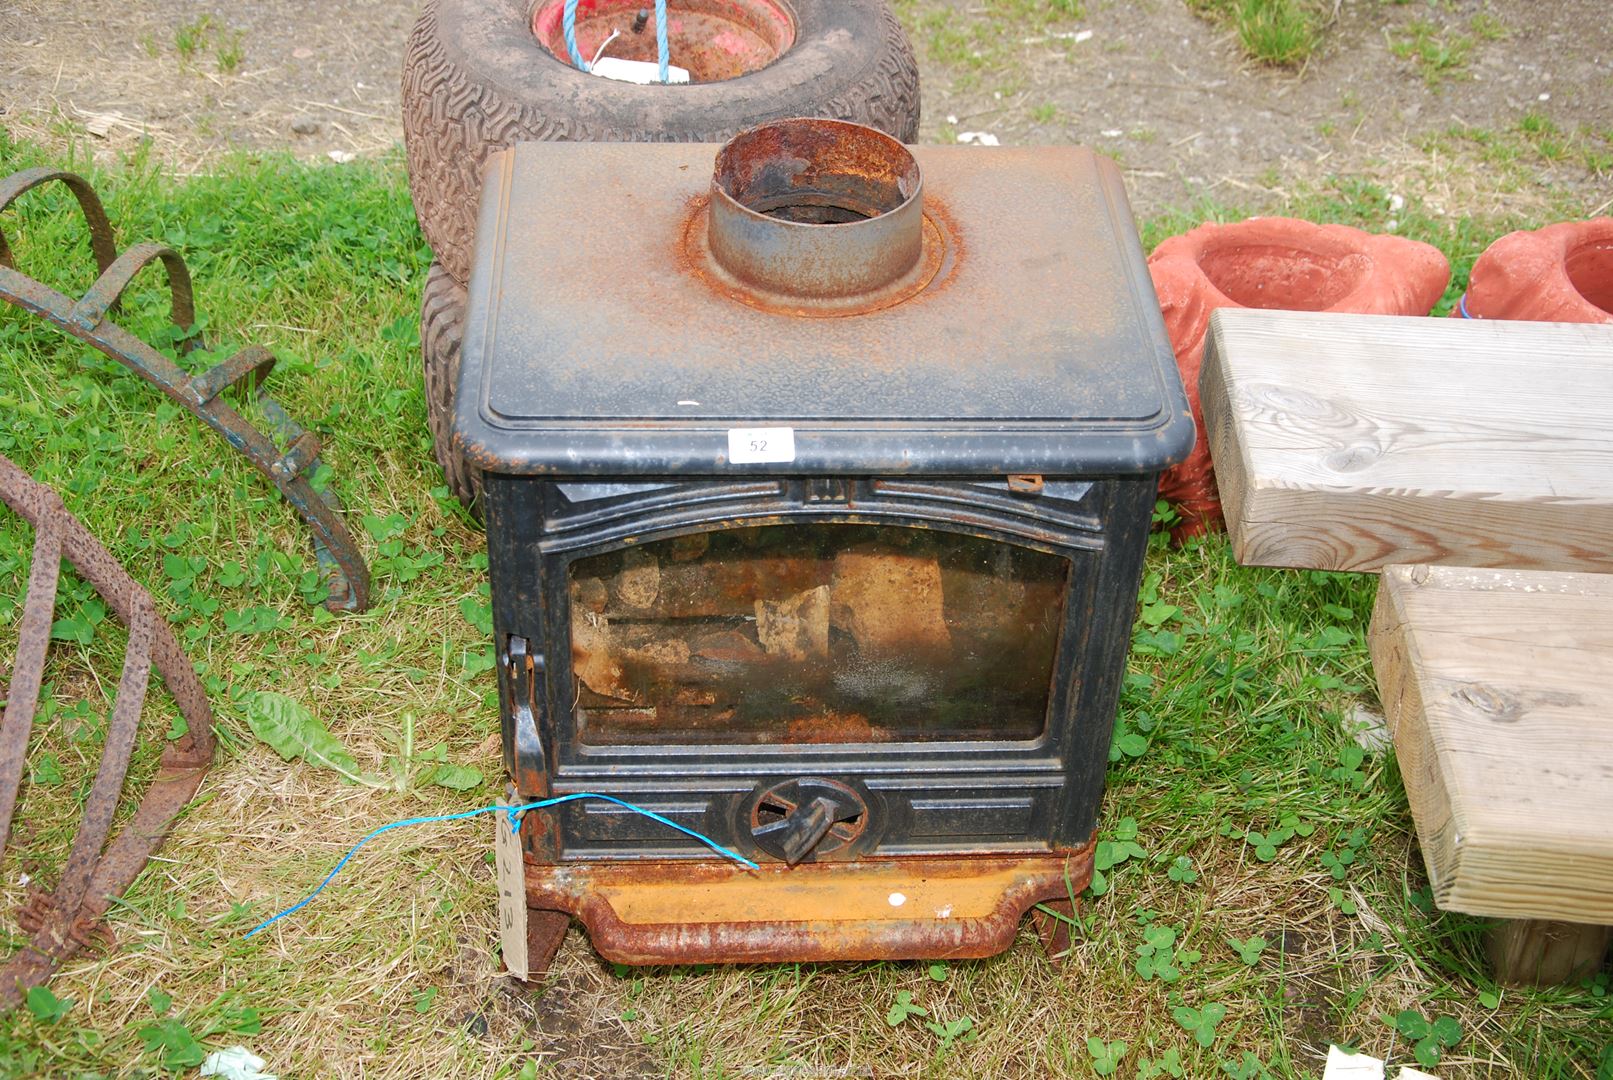 A Multi purpose stove.